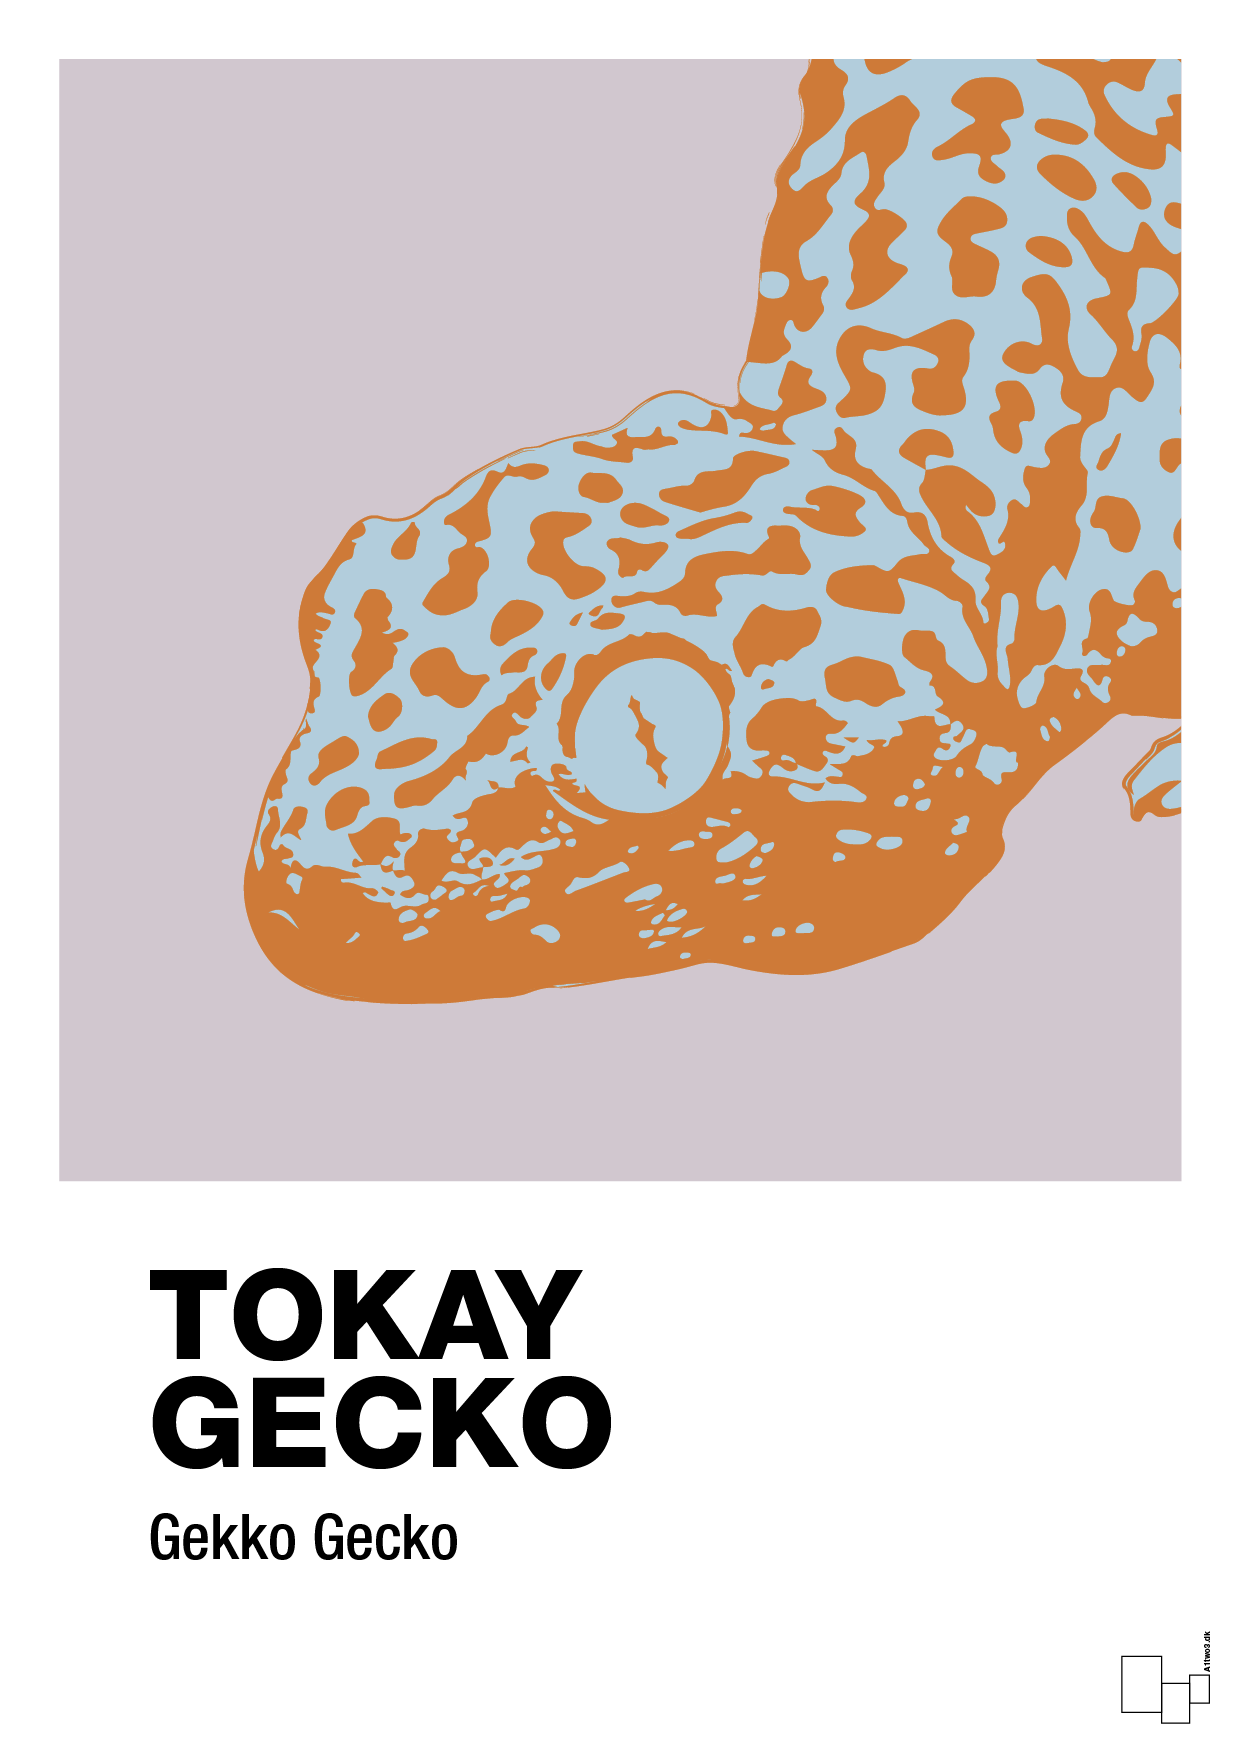 tokay gecko - Plakat med Videnskab i Dusty Lilac